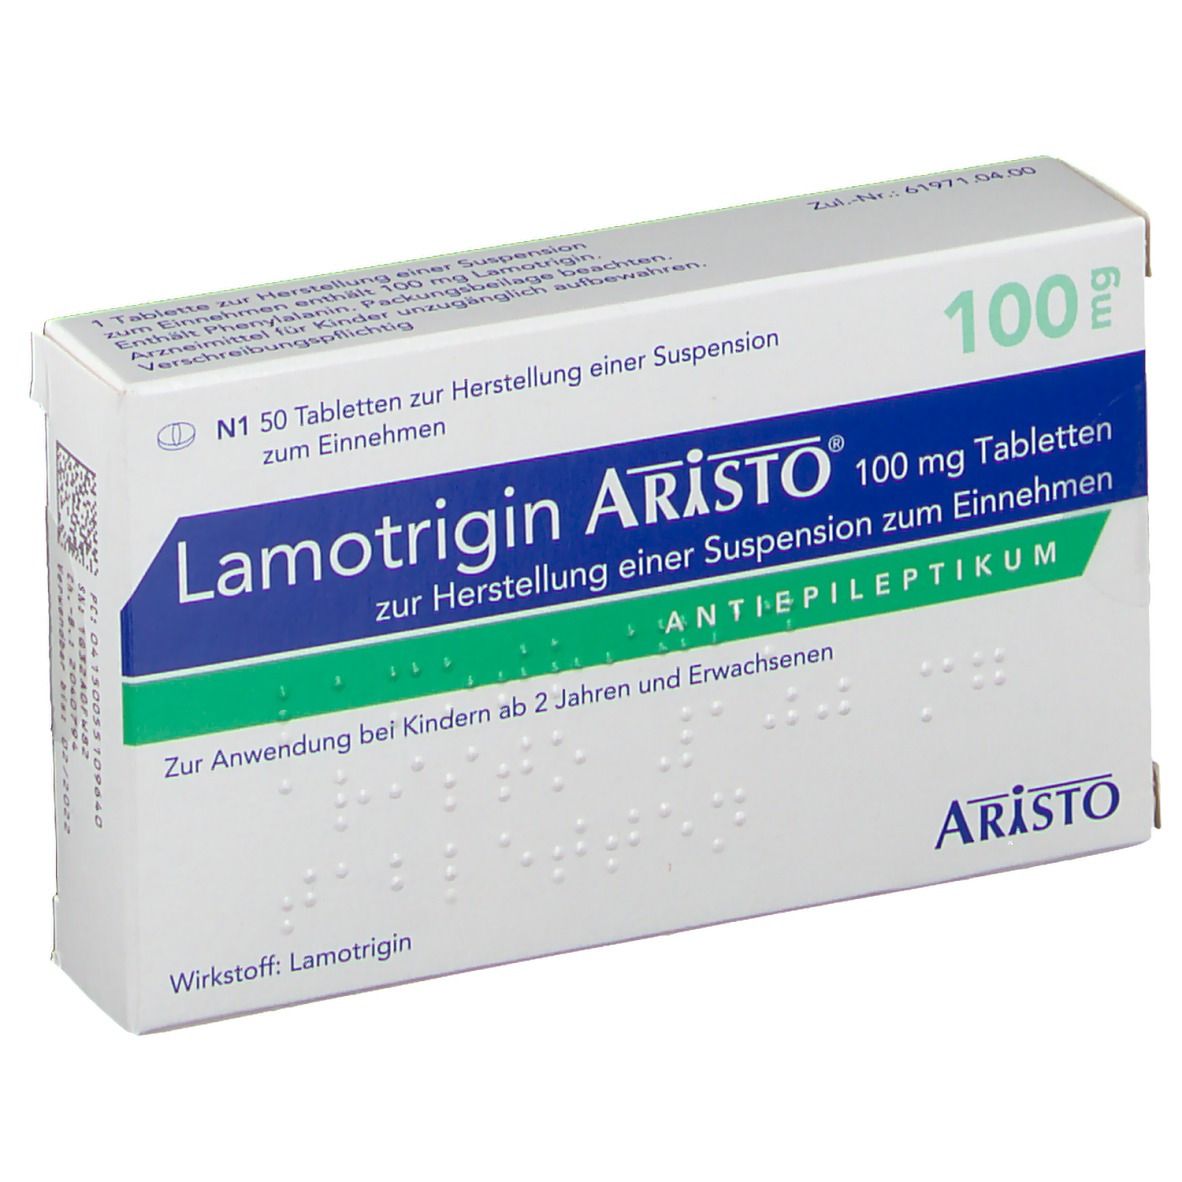 Lamotrigin Aristo® 100 mg